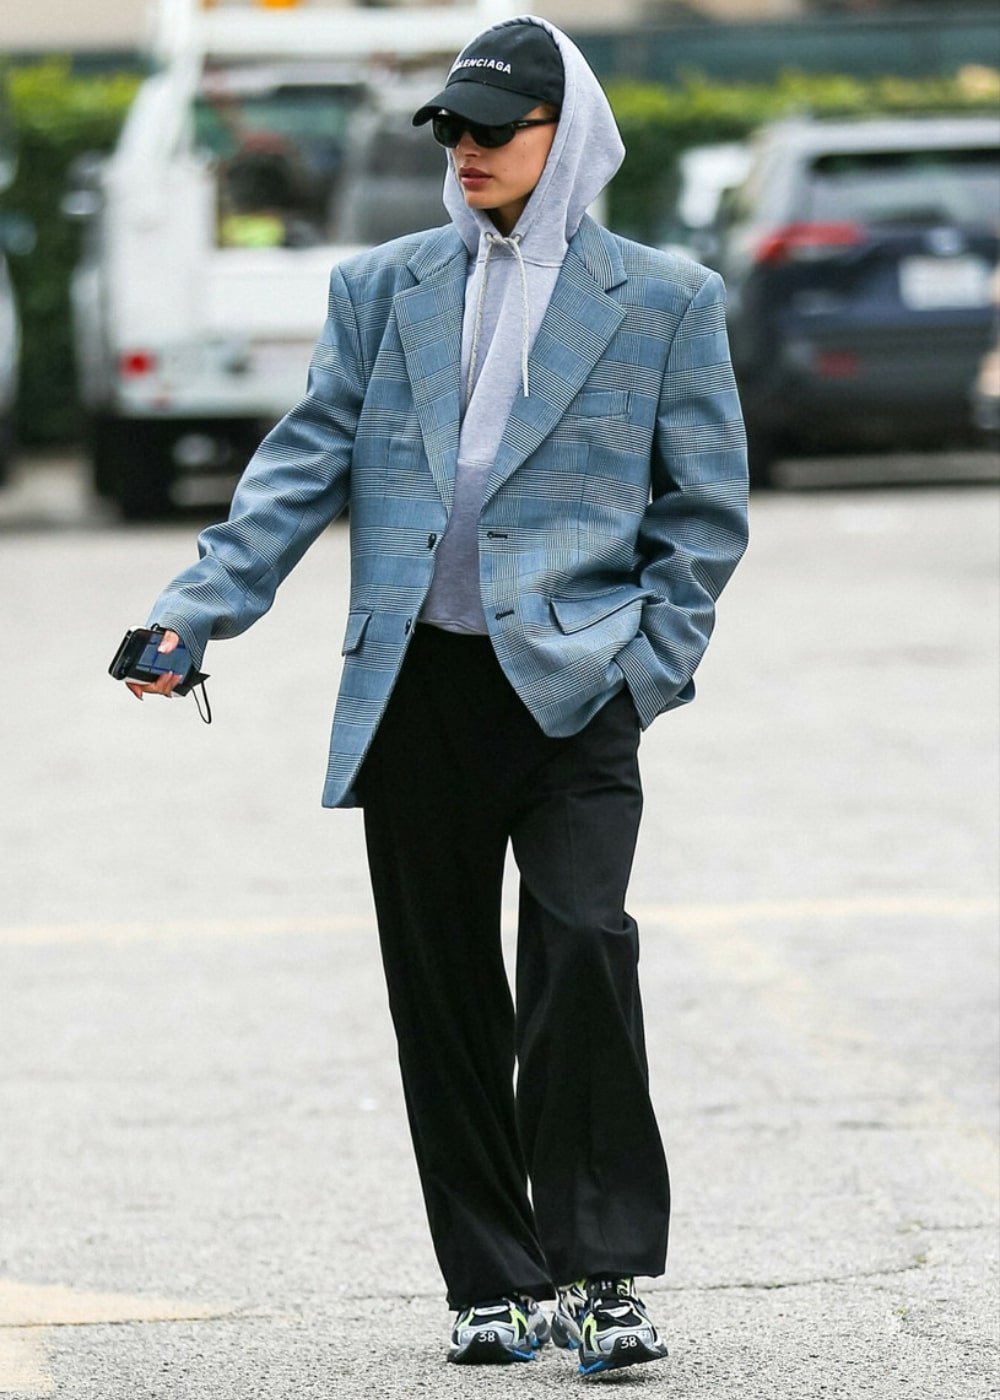 Hailey Bieber - calça jeans, moletom cinza e blazer oversized - look de aeroporto - Inverno  - andando na rua usando óculos de sol e um boné - https://stealthelook.com.br